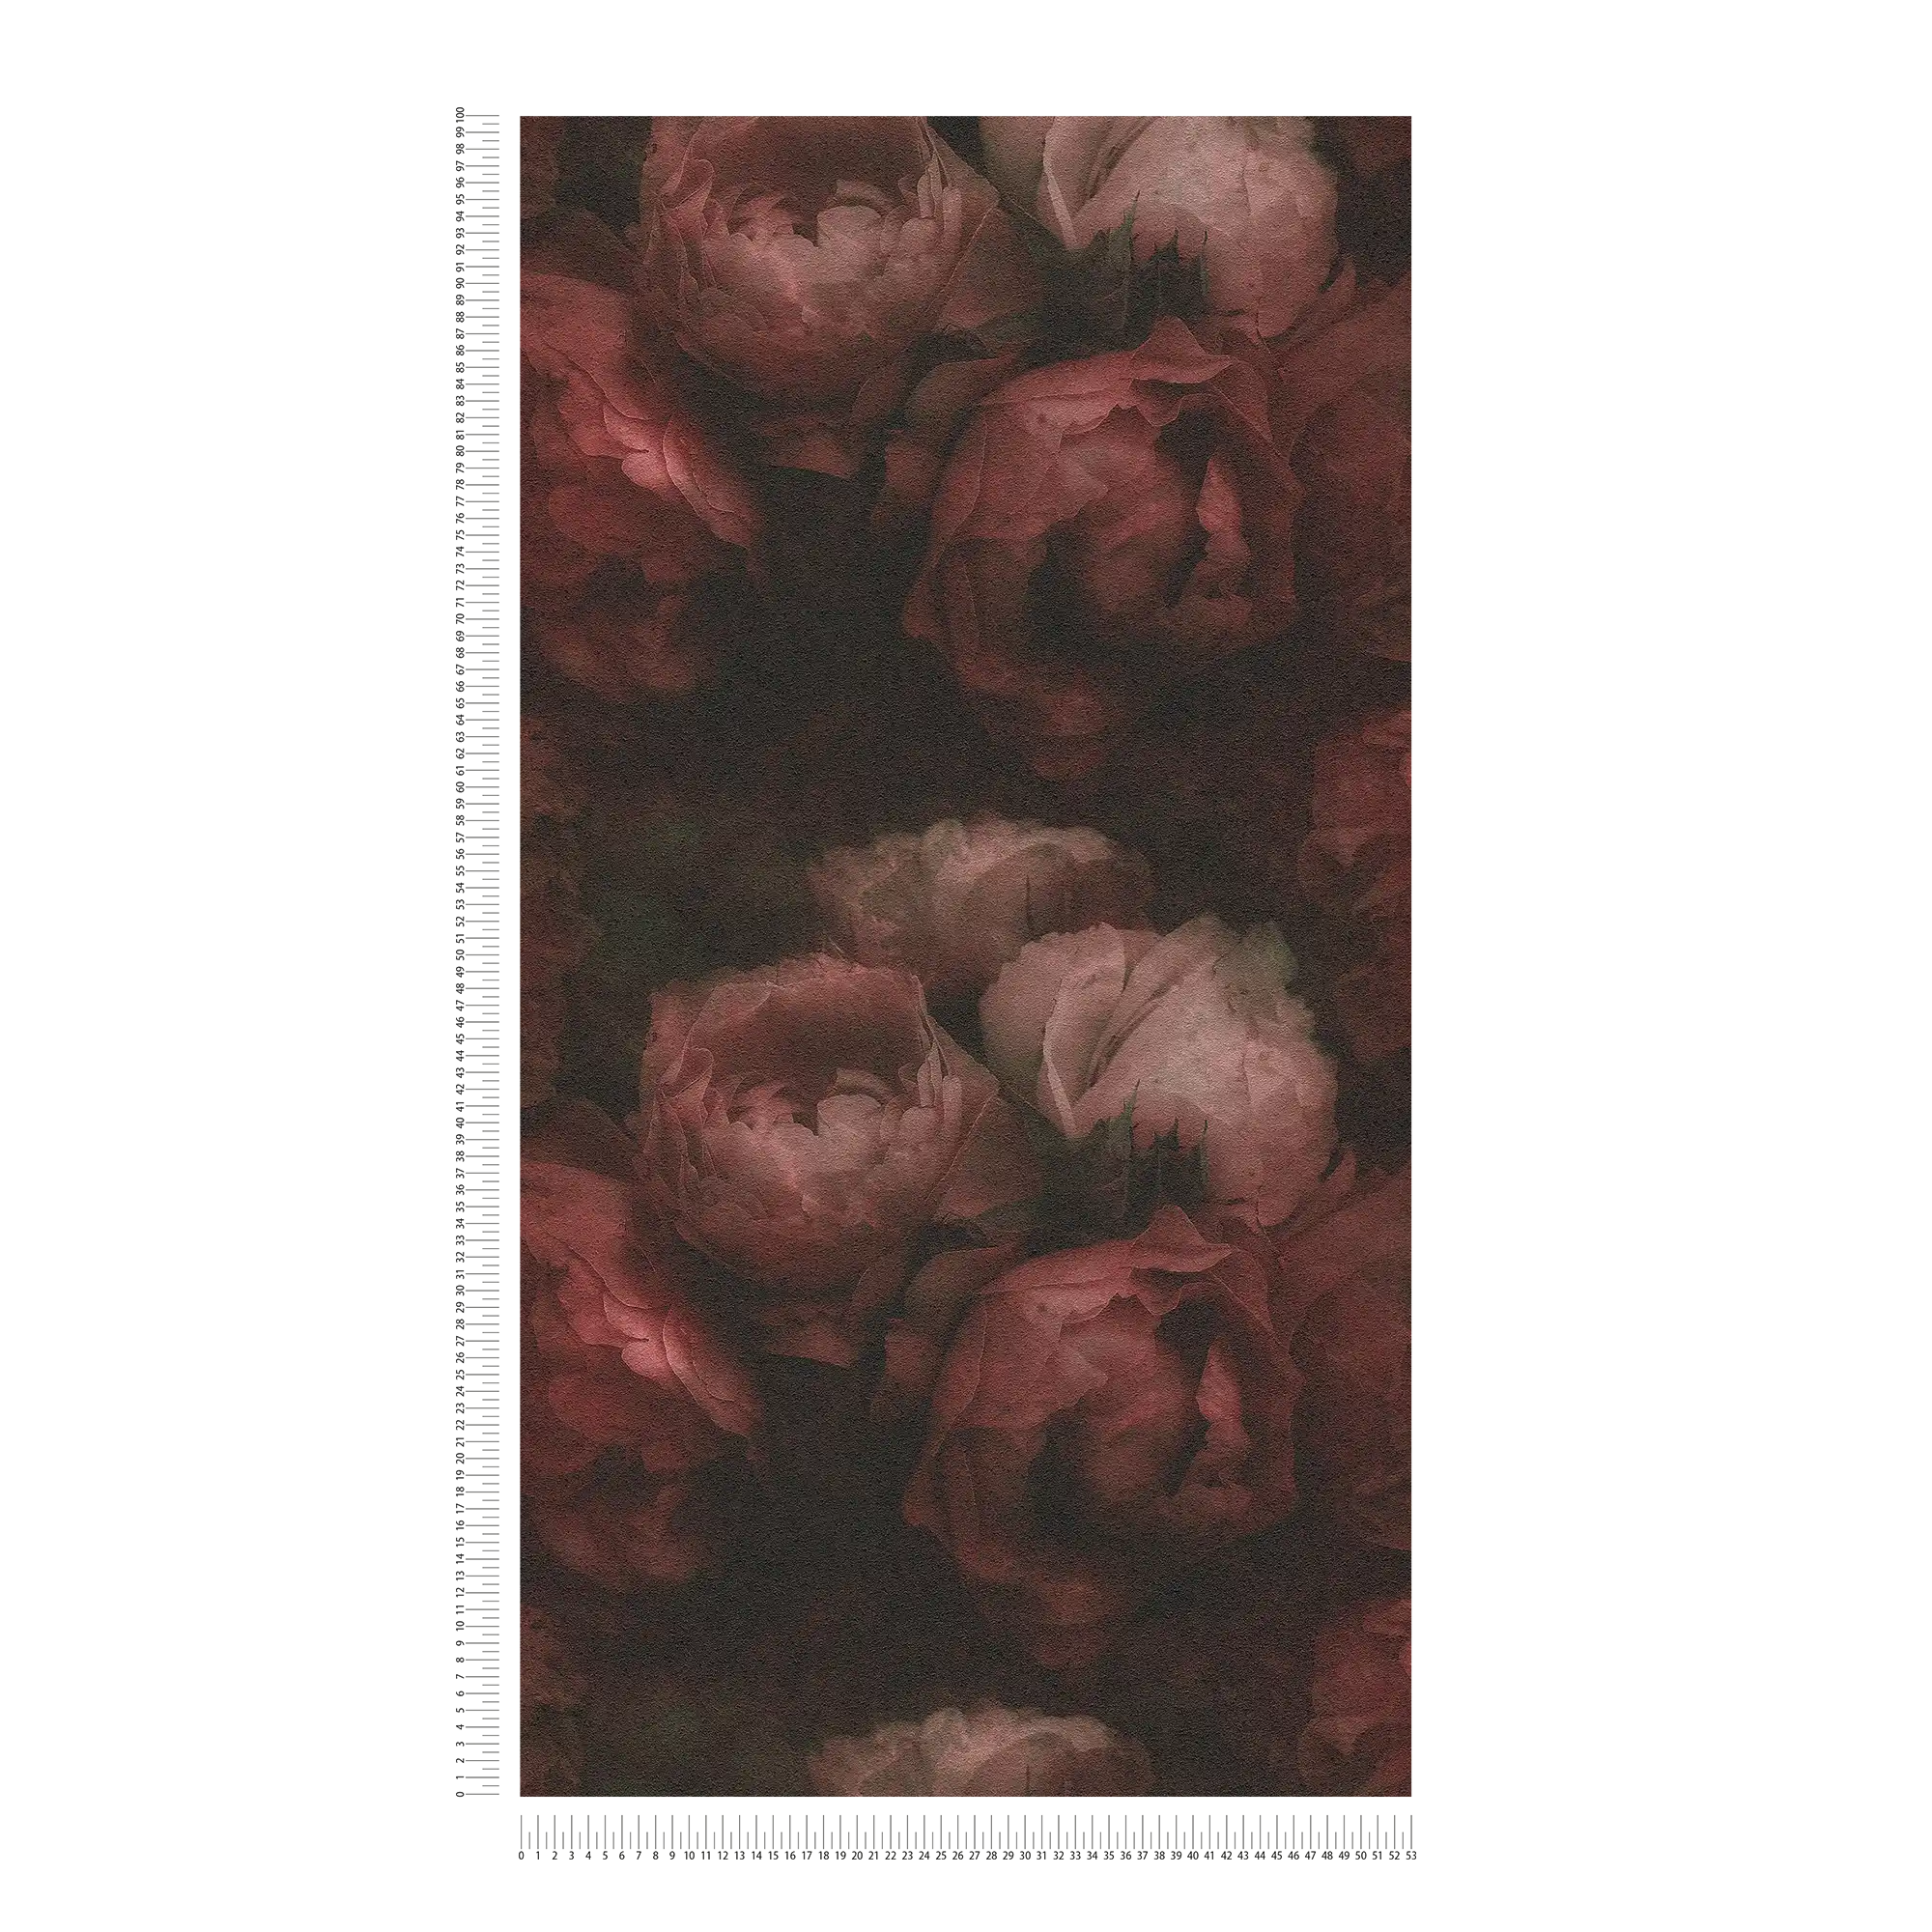             Non-woven wallpaper peonies & linen look - red, black
        